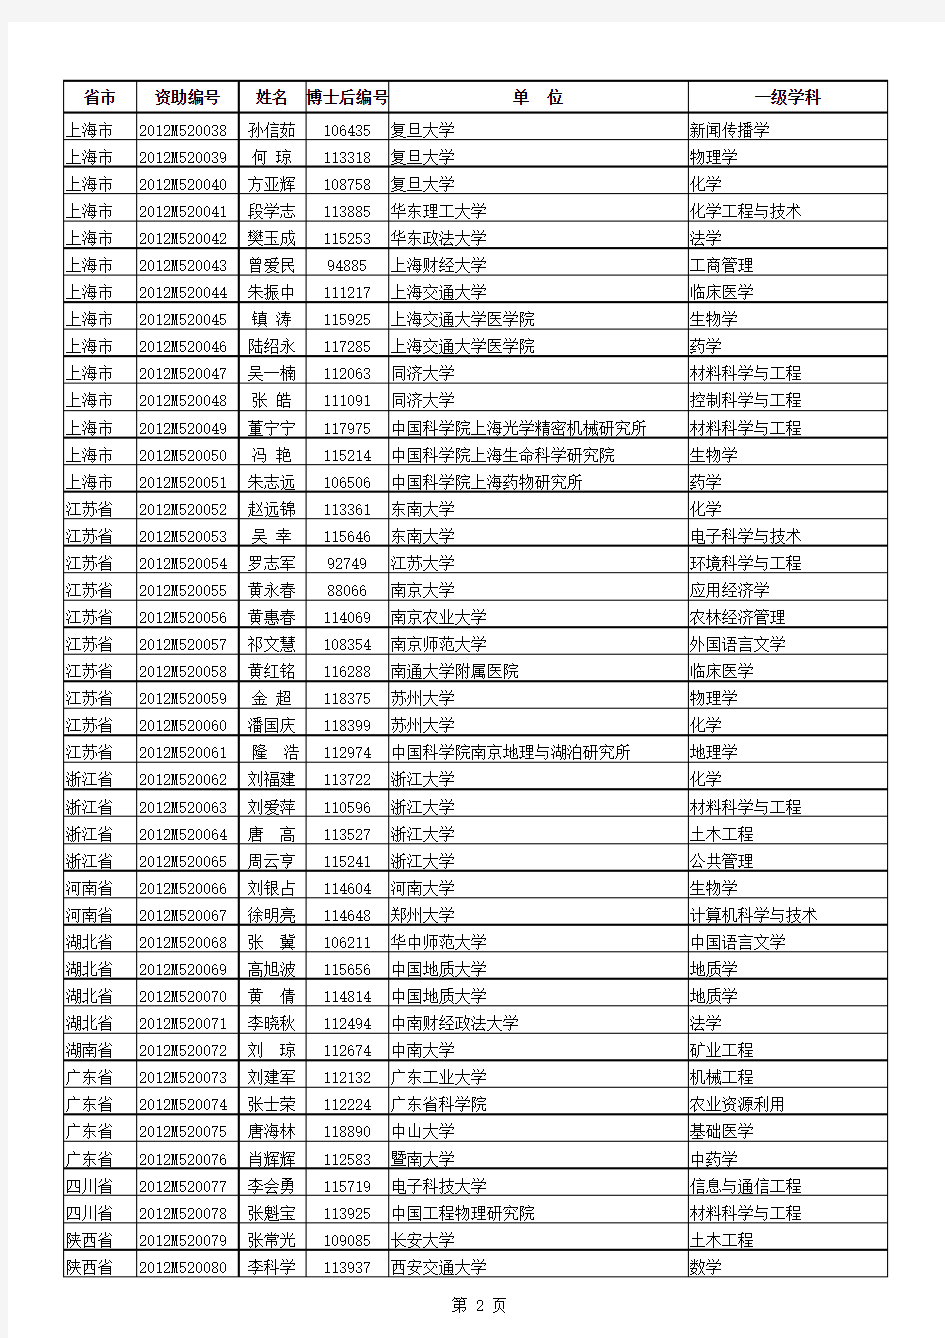 第52批中国博士后科学基金面上资助名单